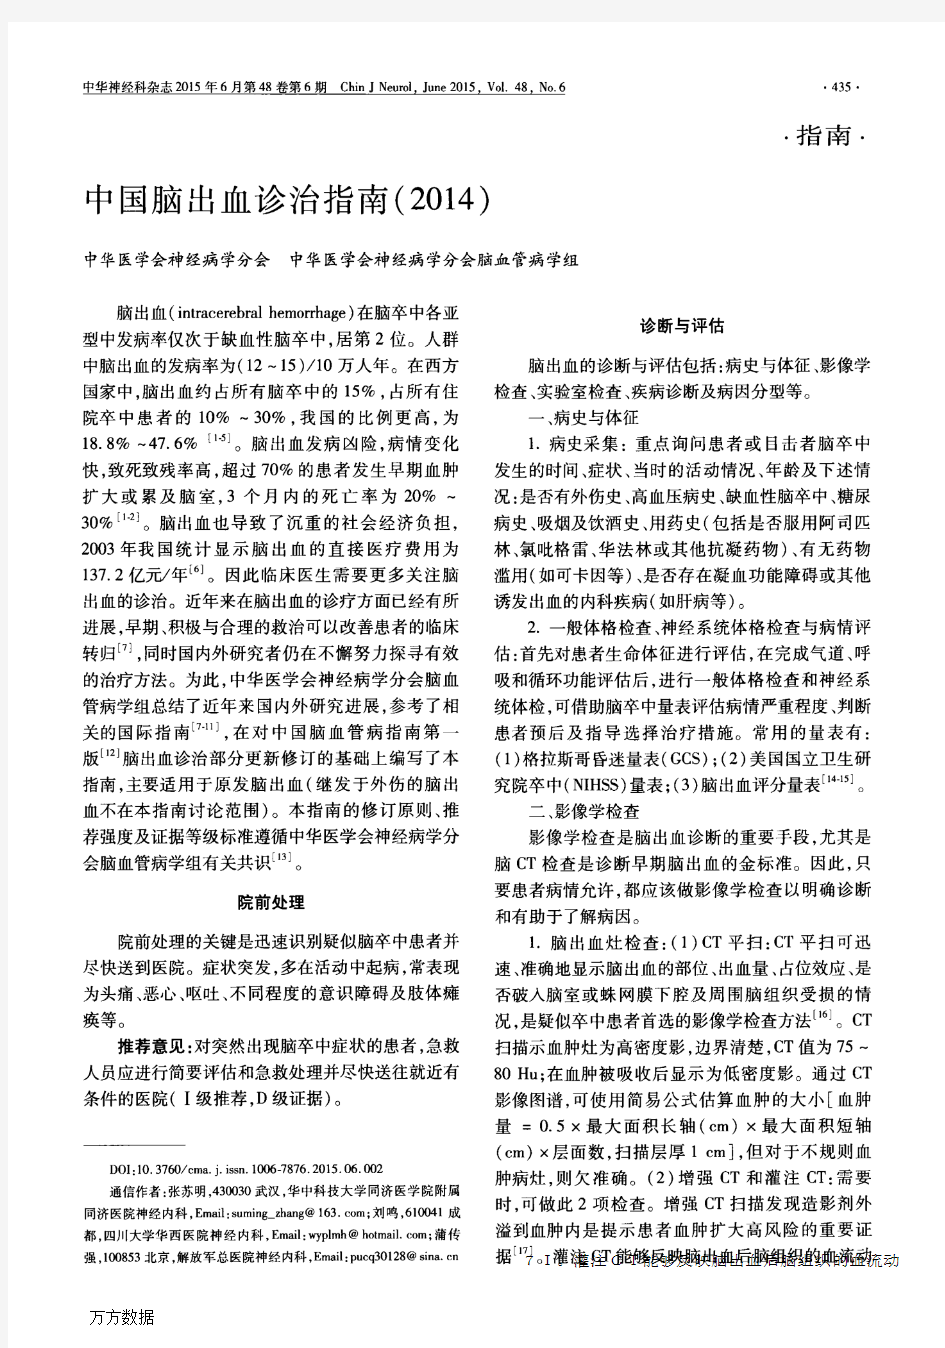 中国脑出血诊治指南(2014)